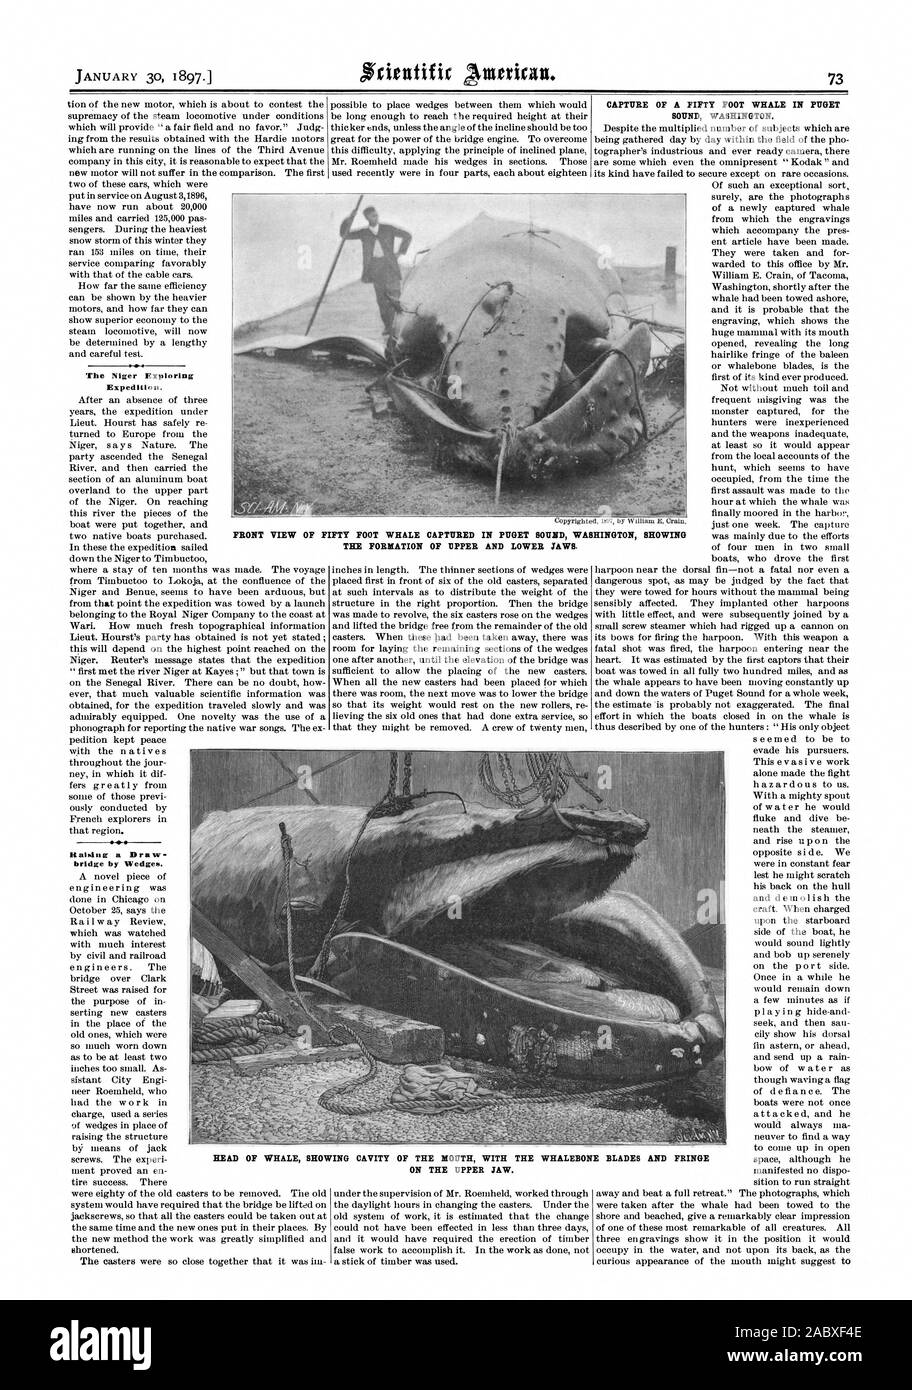 L'expédition d'exploration du Niger. L'éducation d'un pont par les coins. CAPTURE D'UN cinquante pieds de baleine dans le Puget Sound dans l'État de Washington. De cinquante pieds de WHALE capturés dans le PUGET SOUND WASHINGTON MONTRANT LA FORMATION DES MÂCHOIRES SUPÉRIEURE ET INFÉRIEURE. Chef de WHALE MONTRANT CAVITÉ DE LA BOUCHE AVEC DE L'os de baleine et les lames sur la mâchoire supérieure., Scientific American, 1897-01-30 Banque D'Images